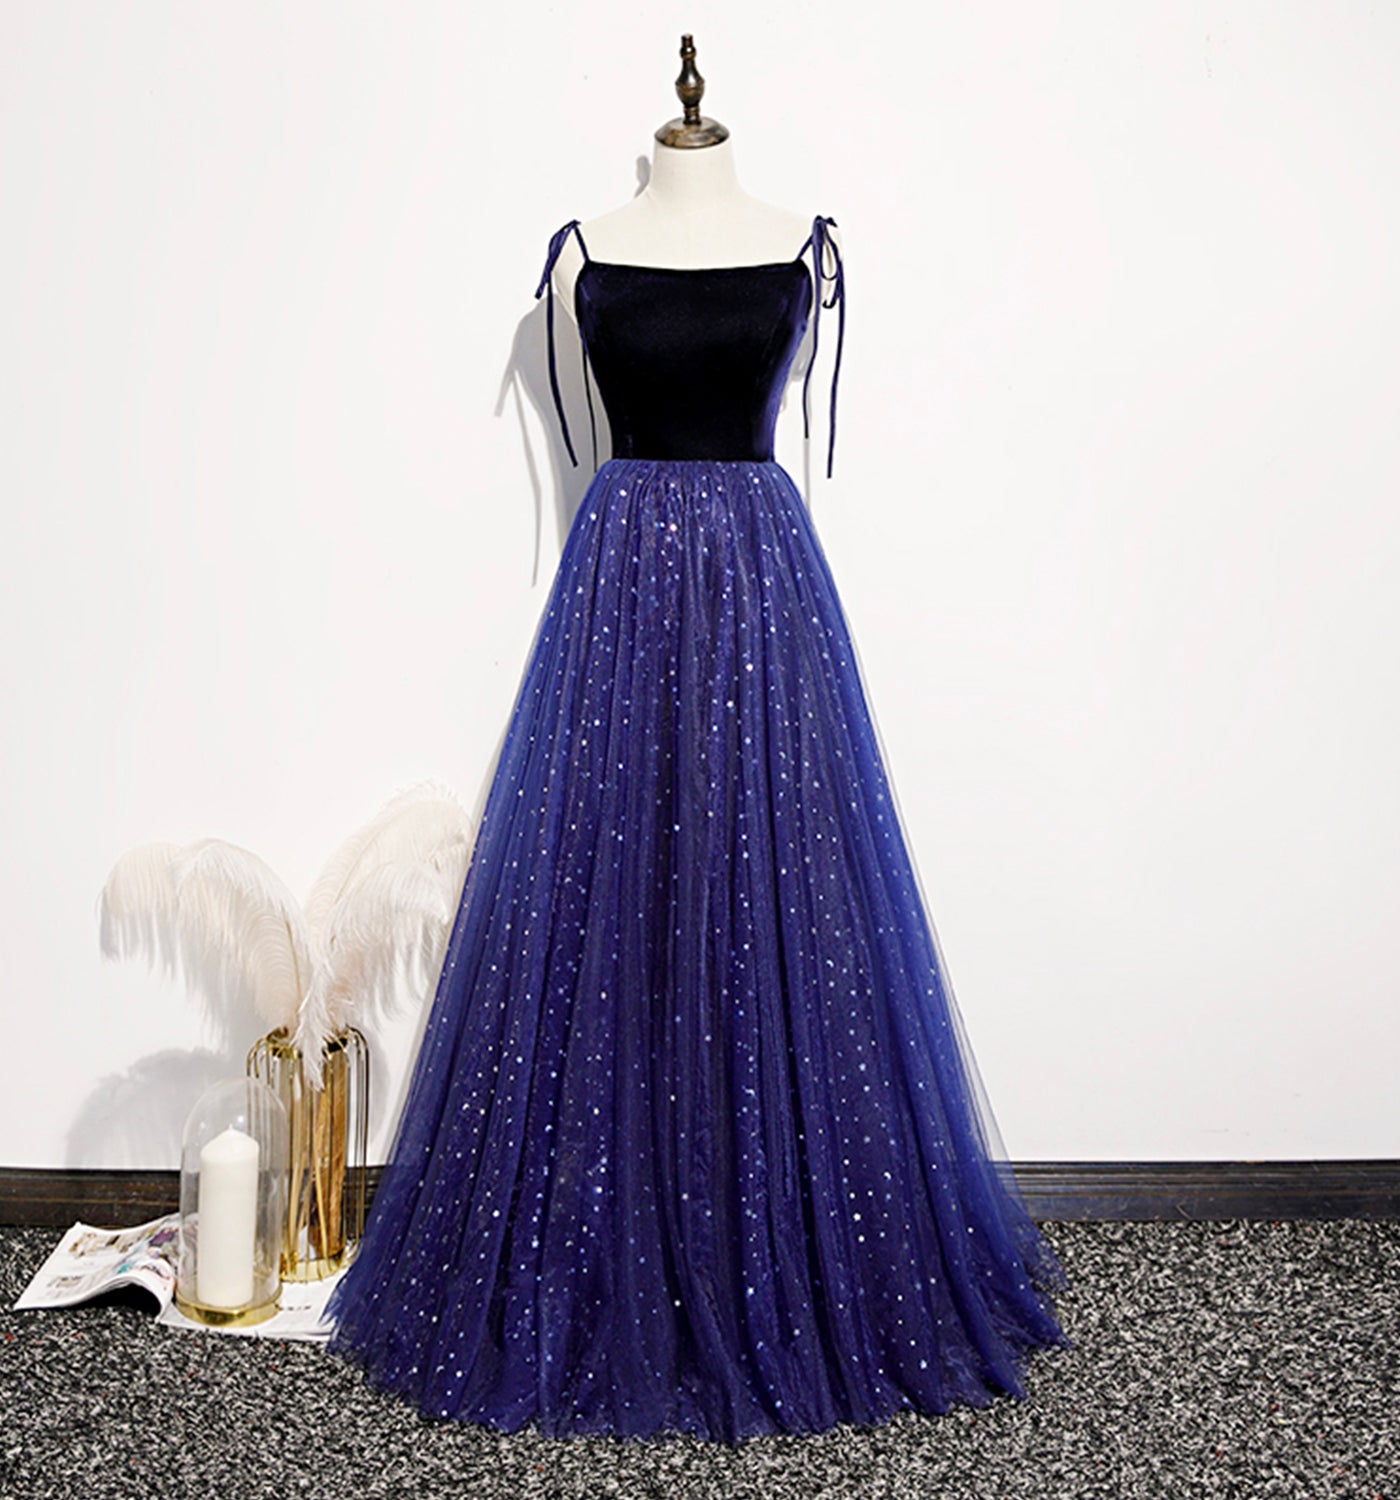 Blue velvet tulle long prom dress A line evening dress  8634